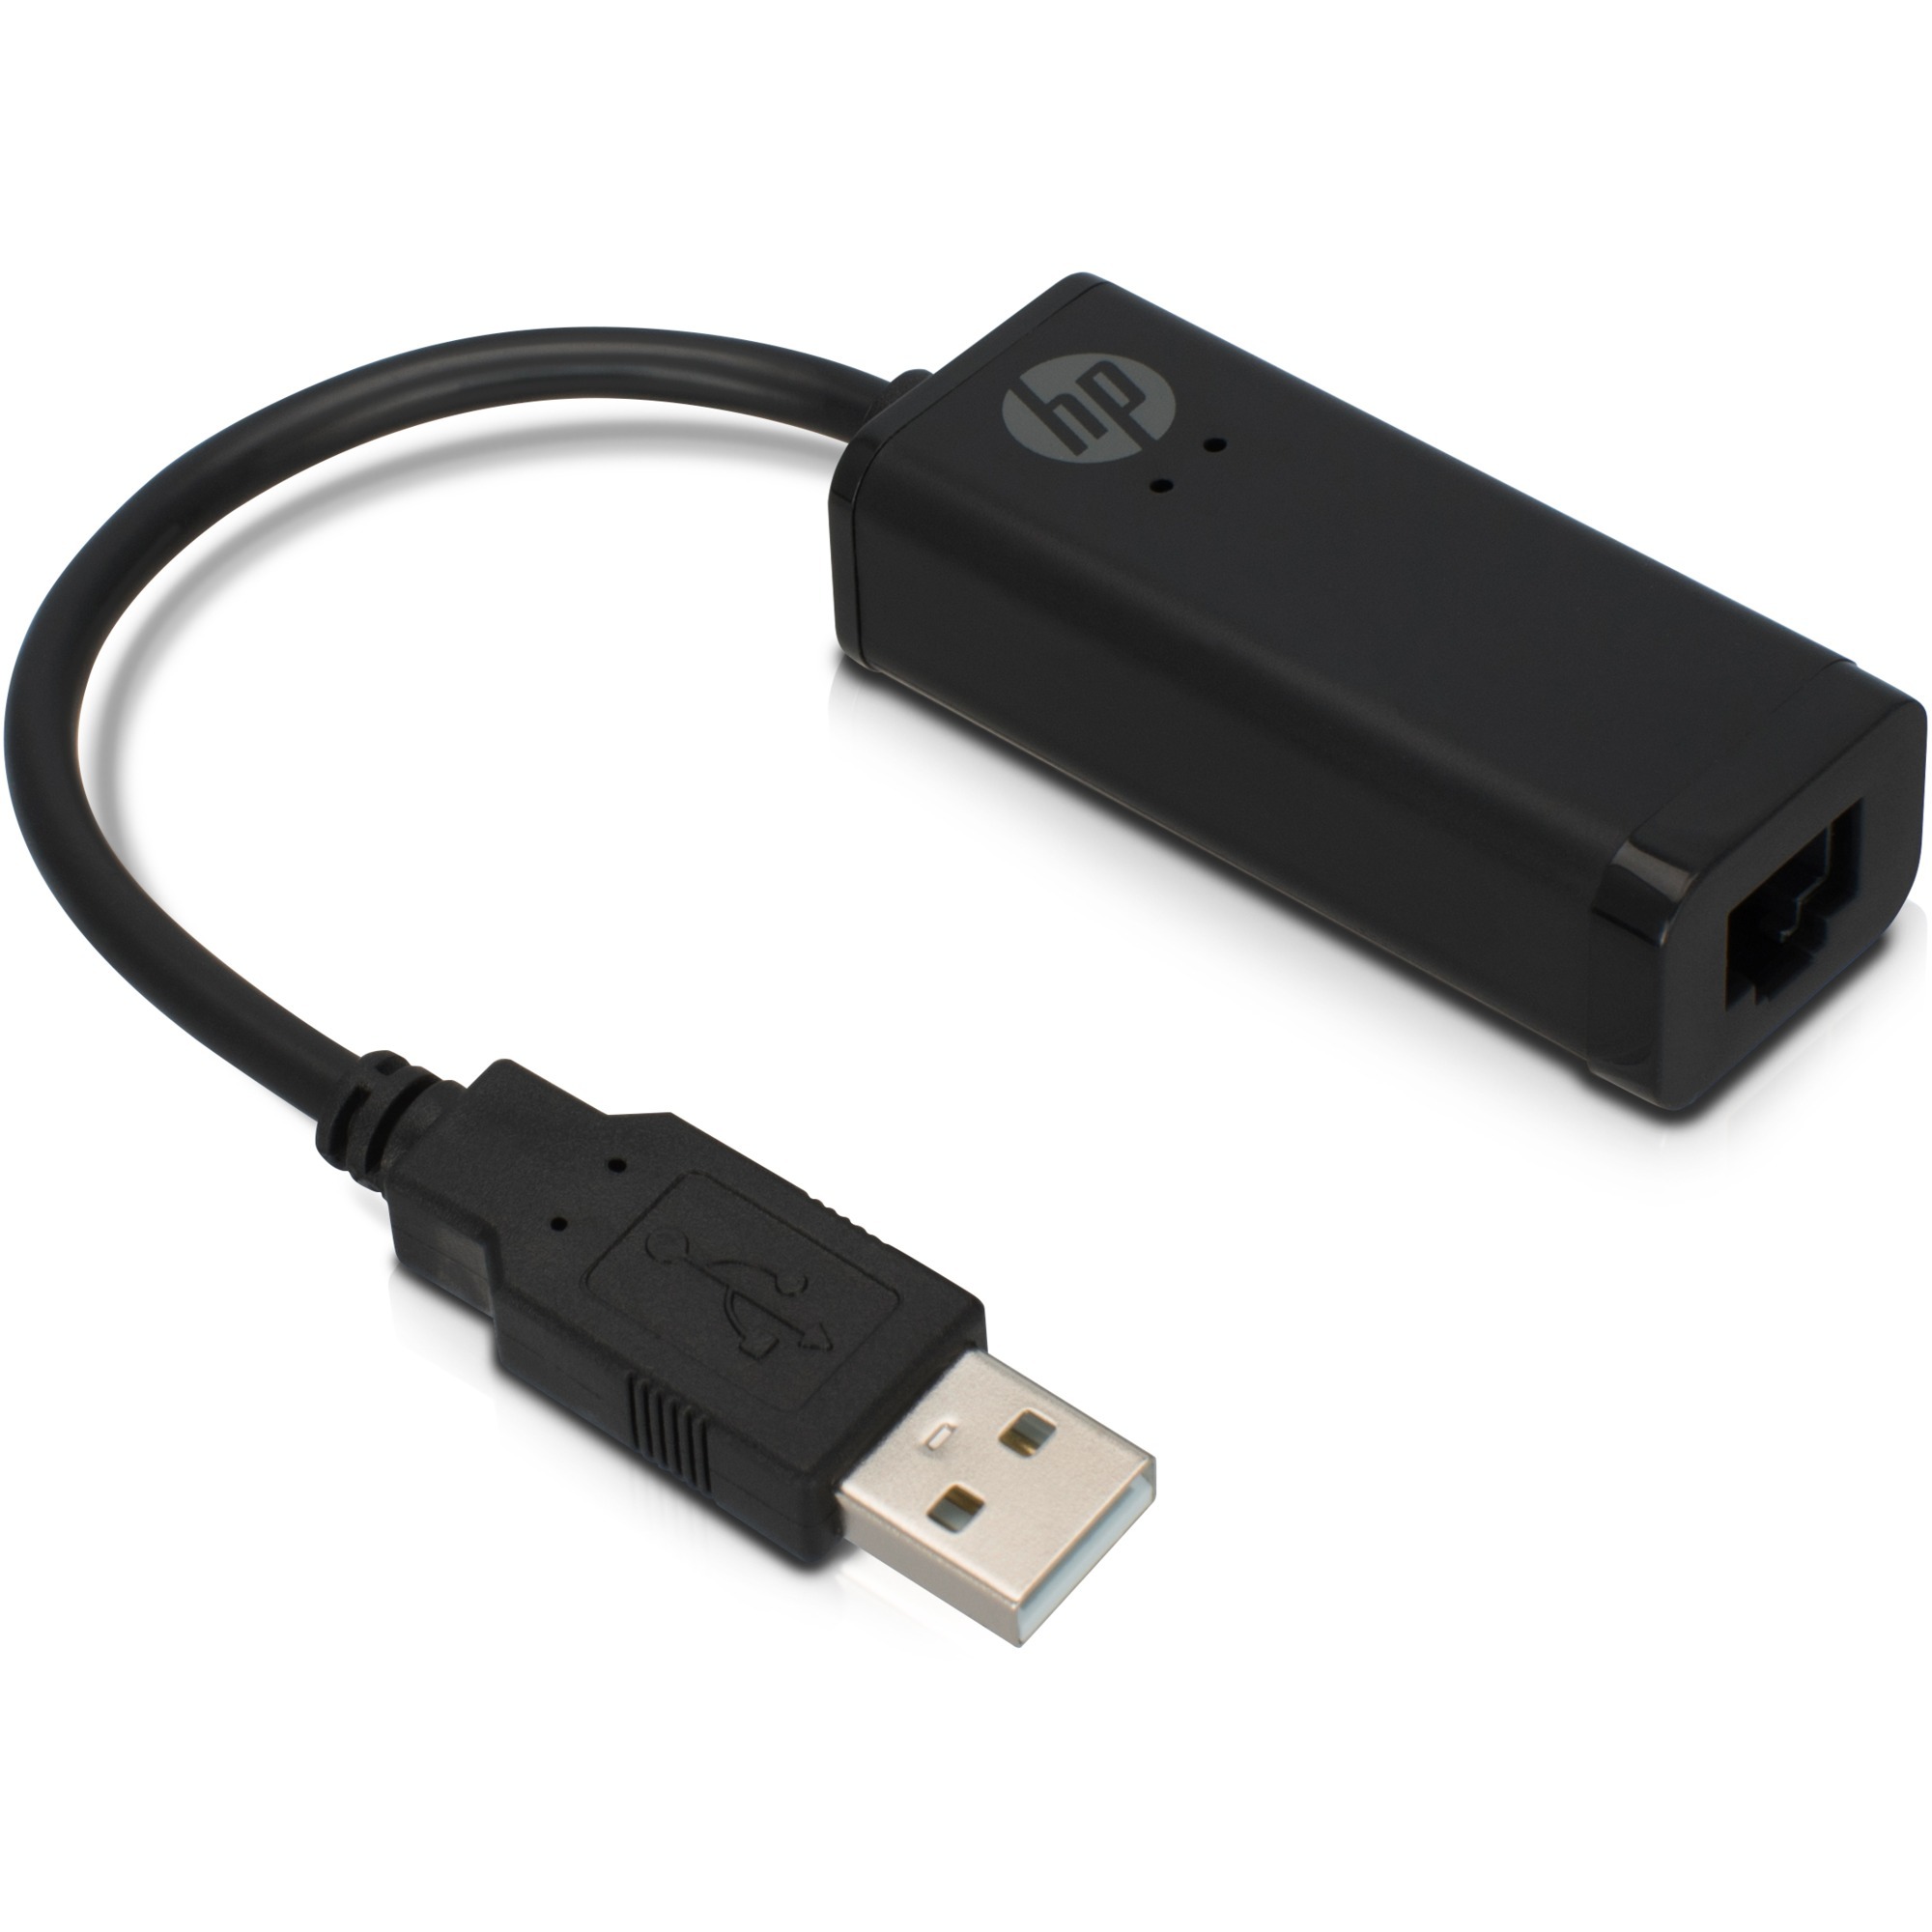 Image of Alternate - Adapter USB A (Stecker) > RJ-45 (Buchse) online einkaufen bei Alternate